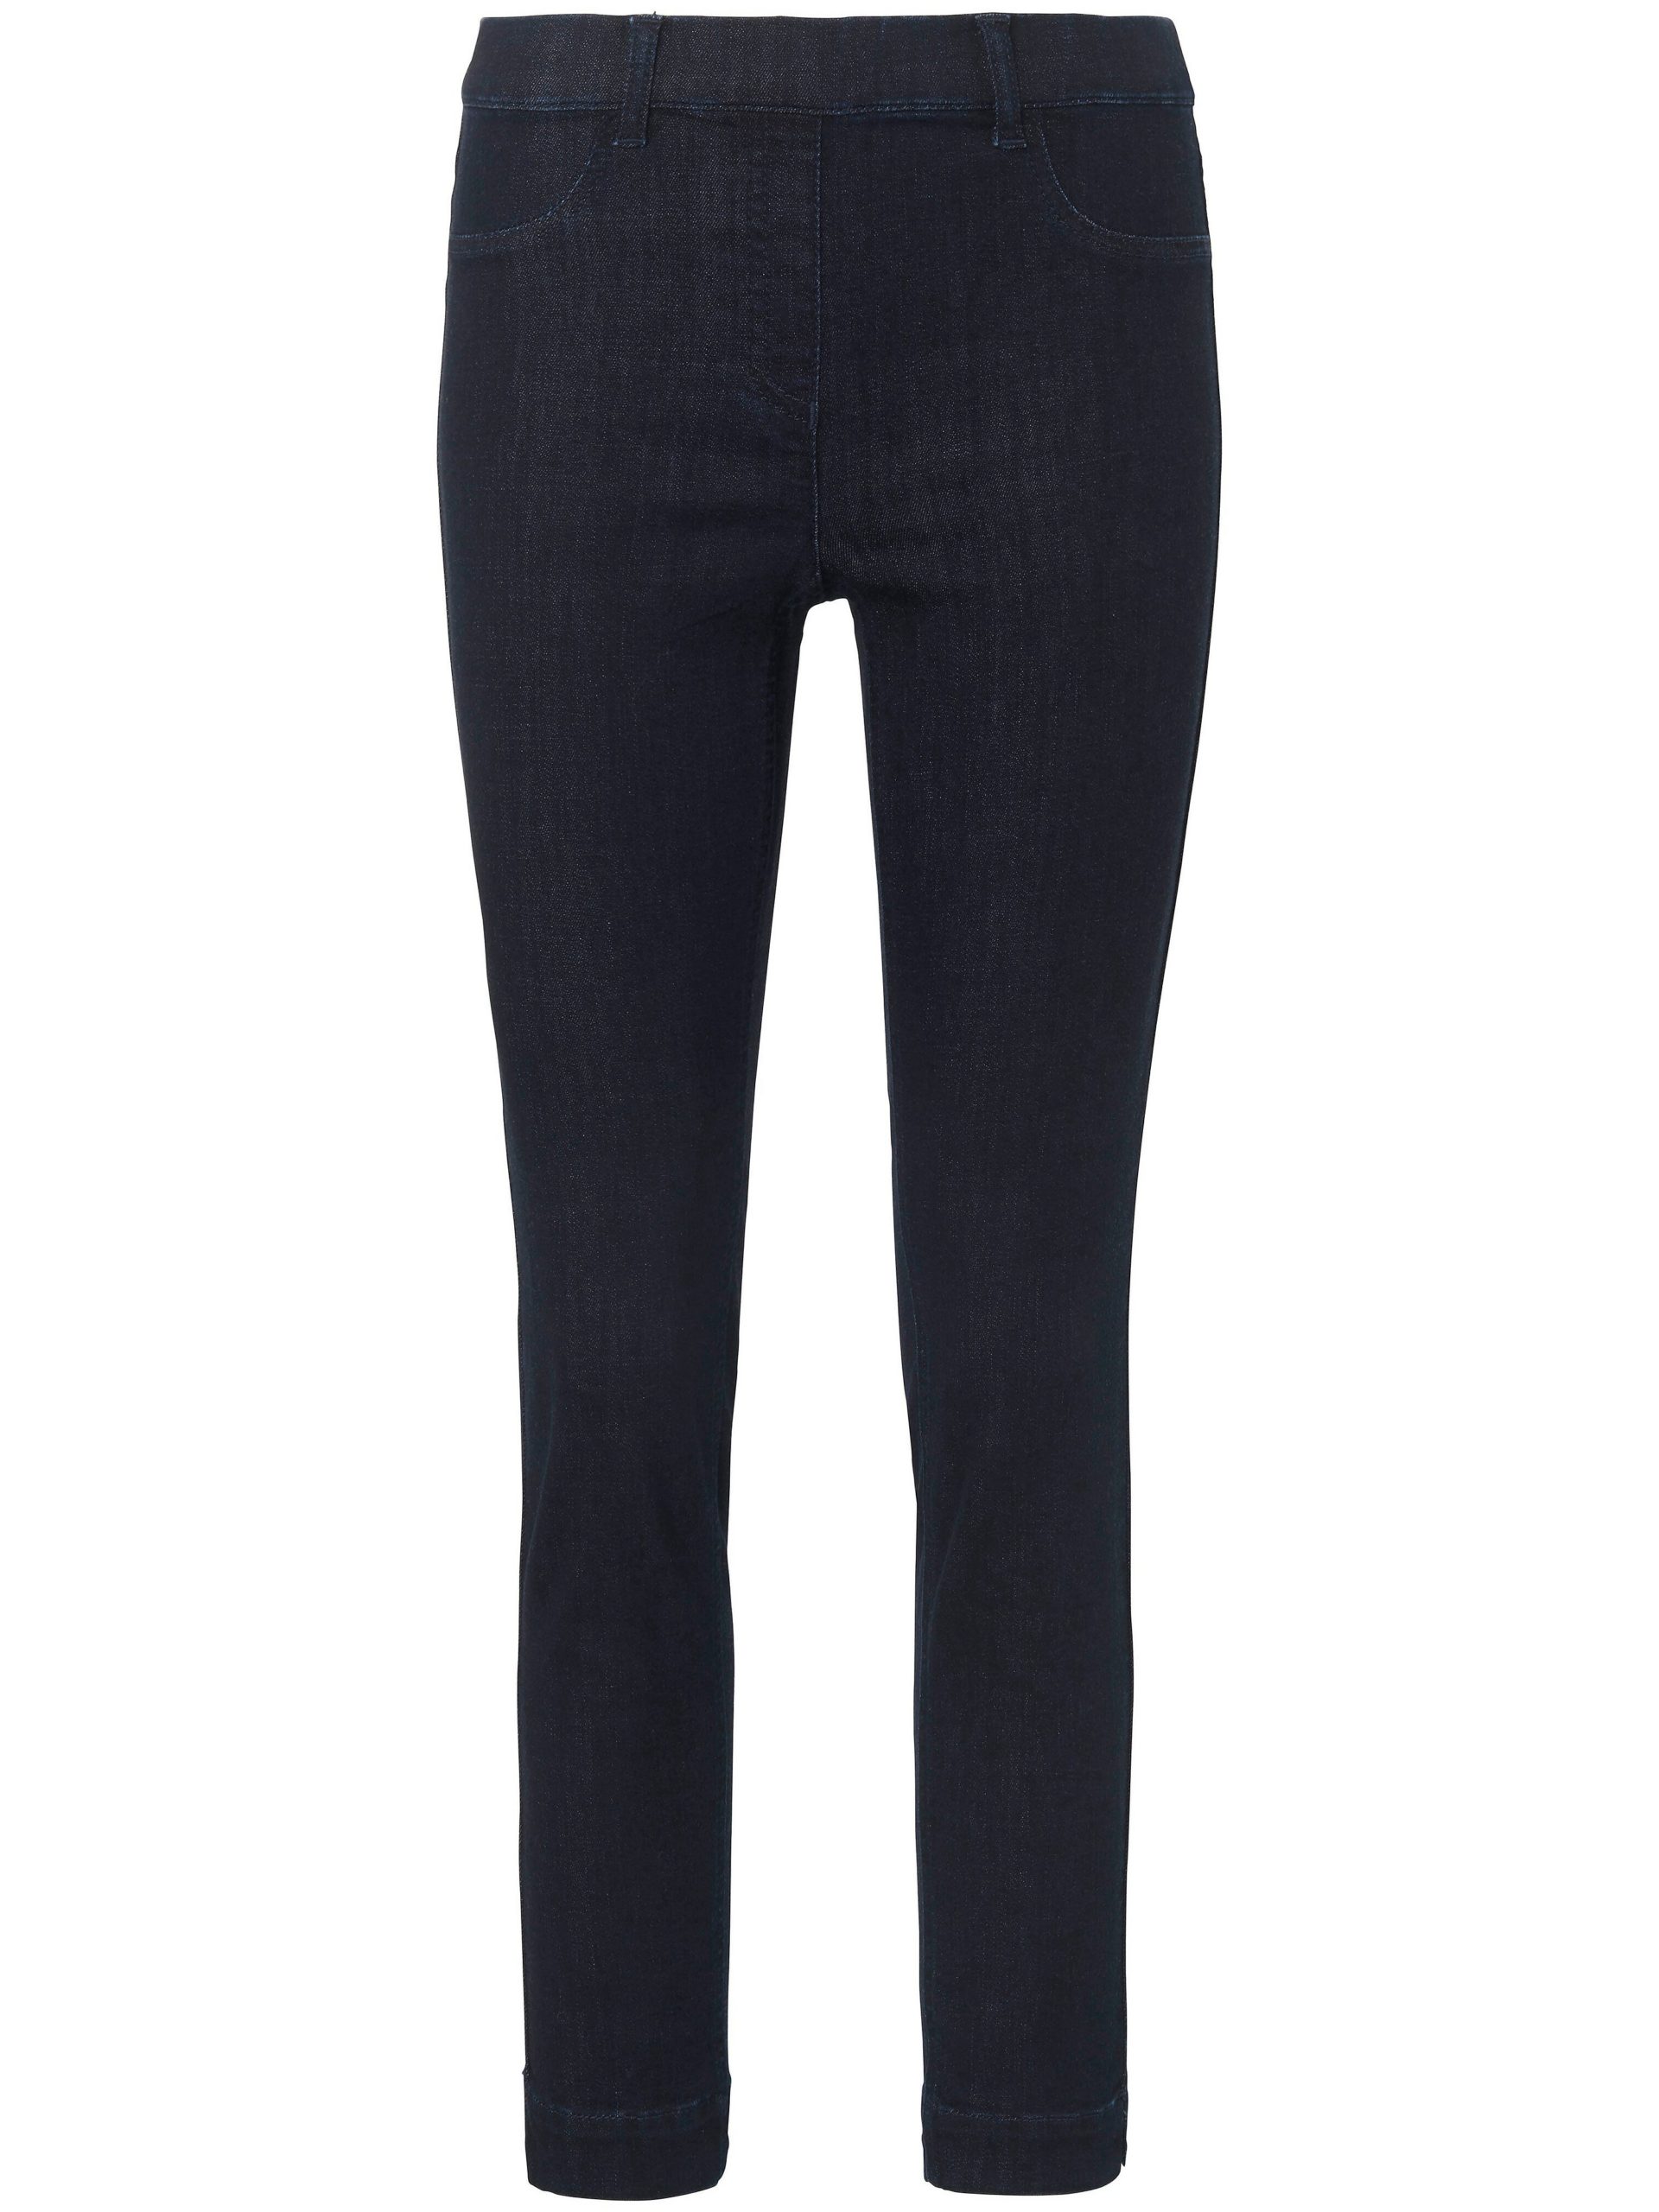 Enkellange jeans pasvorm Sylvia met ritssluiting Van Peter Hahn denim Kopen